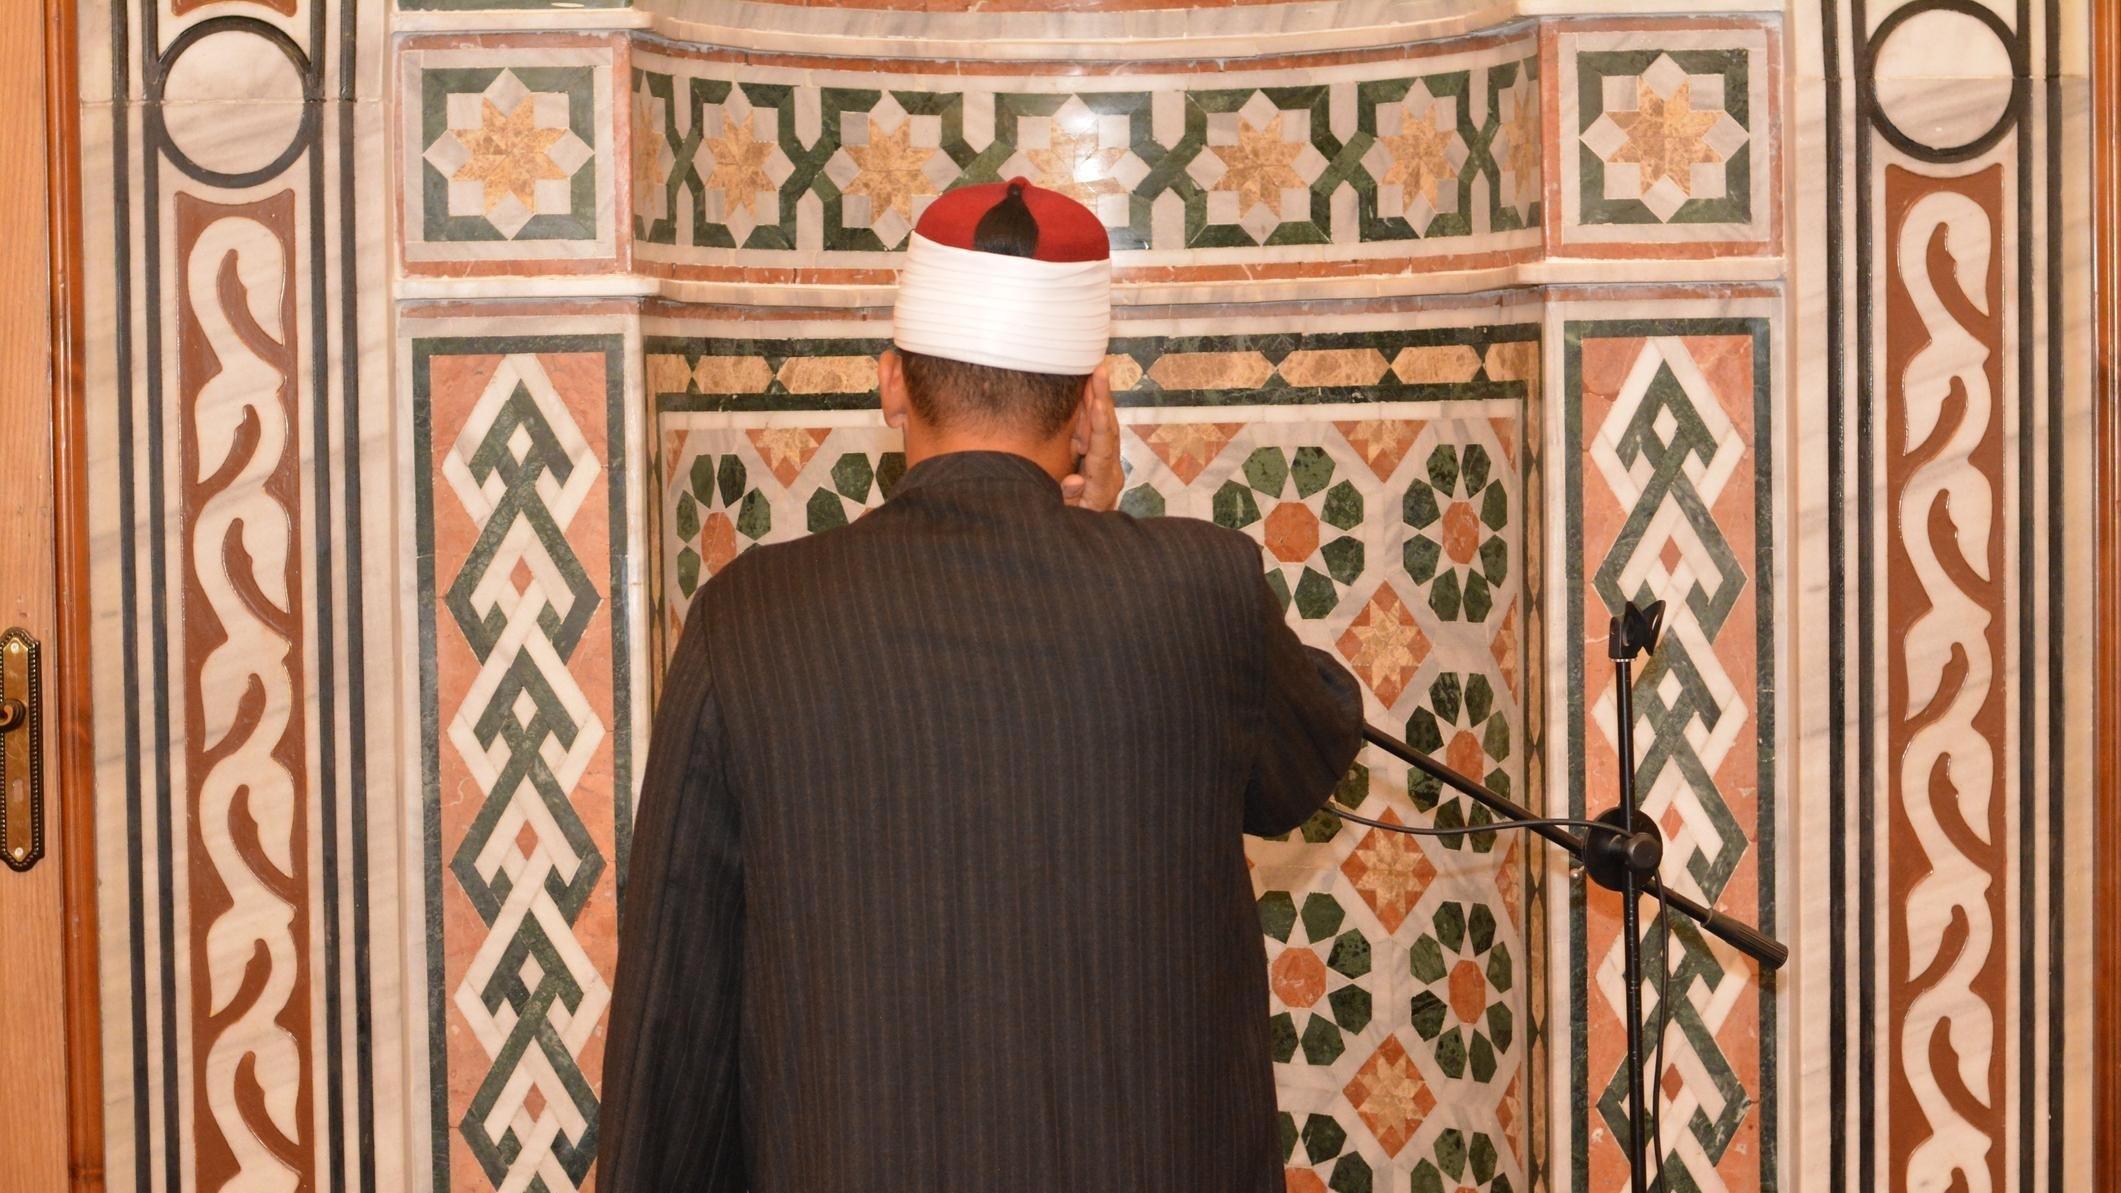 Duitsland stopt met het accepteren van imams uit Türkiye